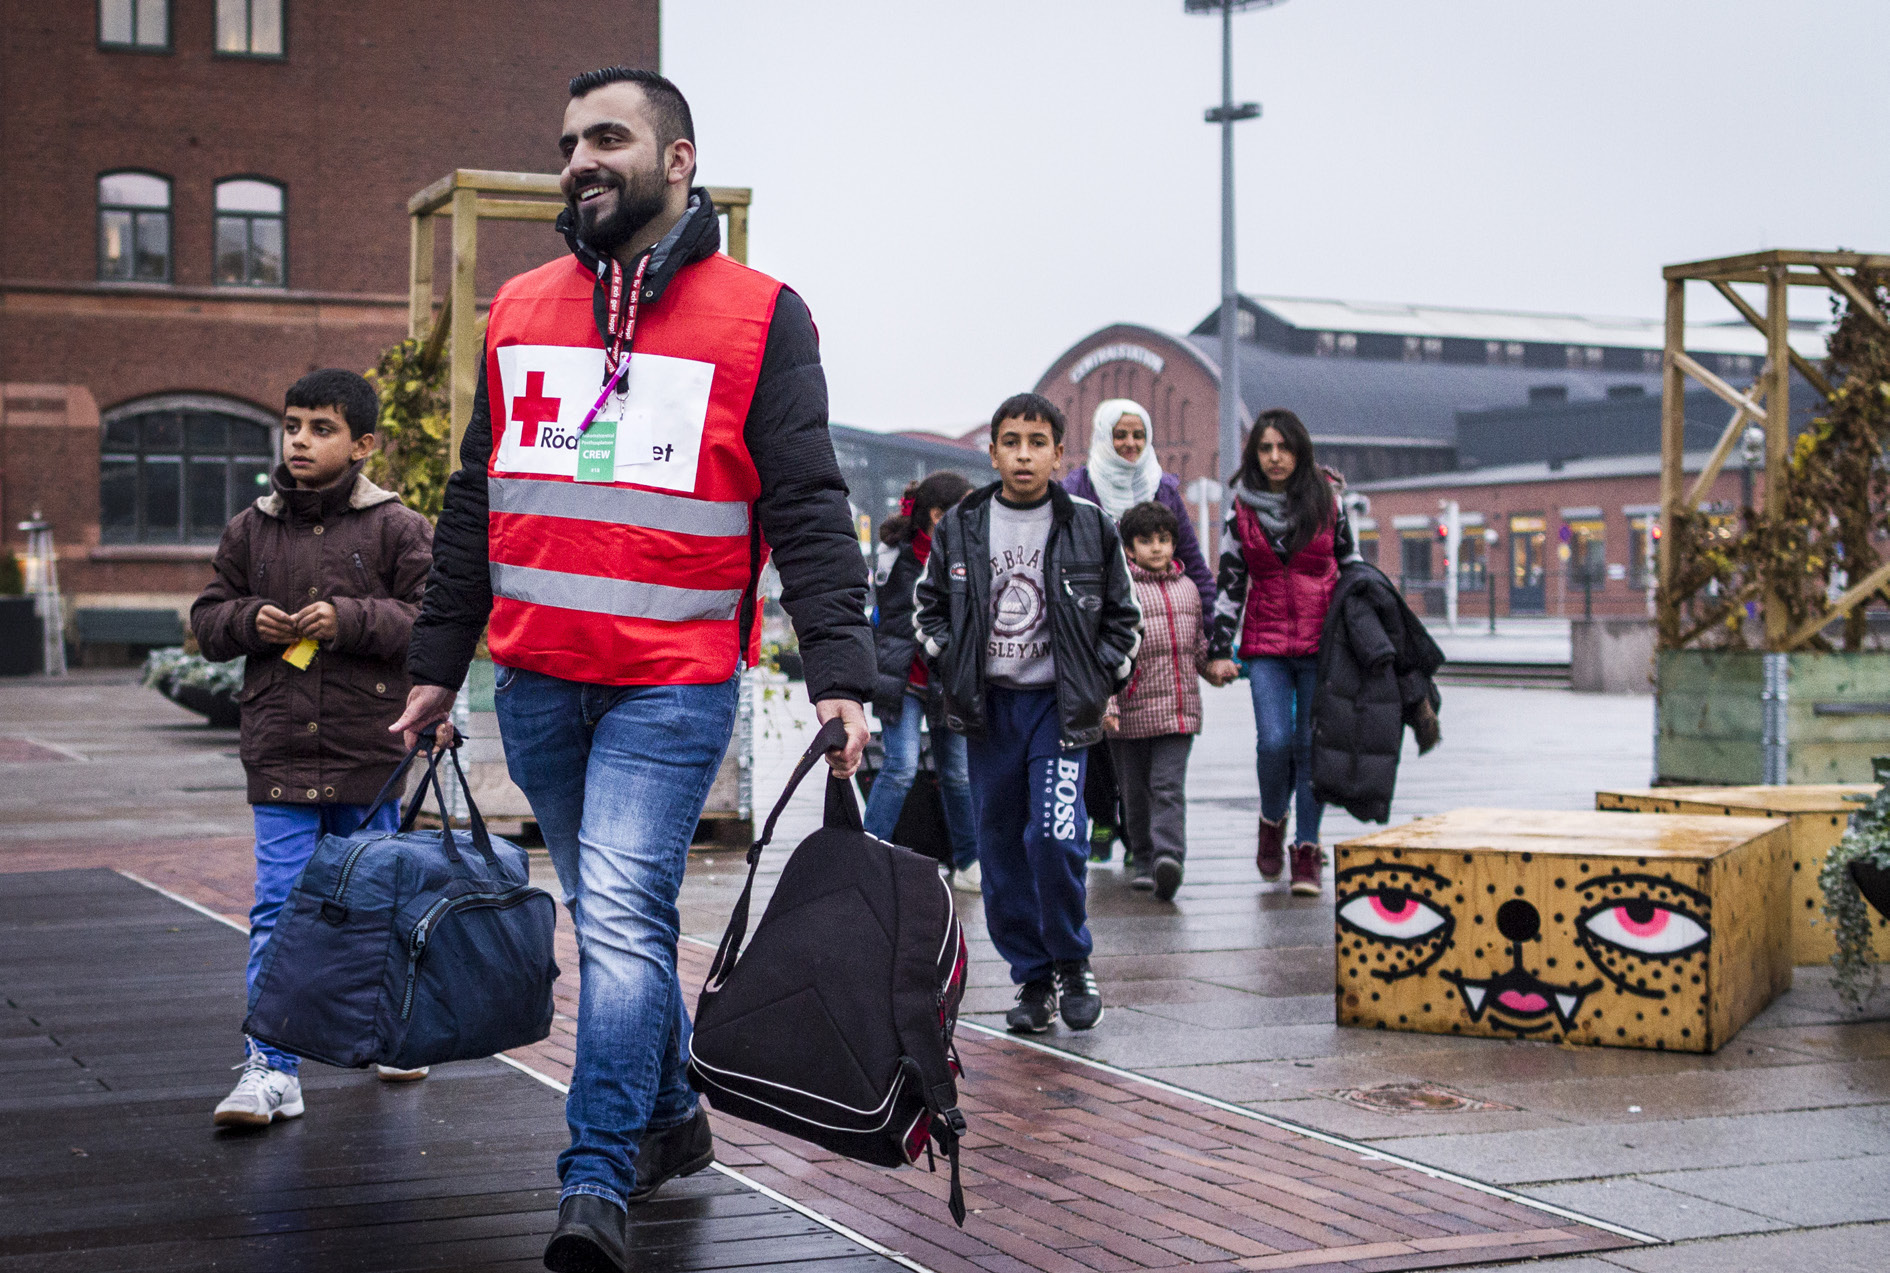 Foto: Claes Thureson Volontärer från Röda Korset möter människor på flykt. Malmö, november 2015. Nationellt särskilda insatser 2015 Nedan följer exempel på resultat inom vårt nationella arbete.